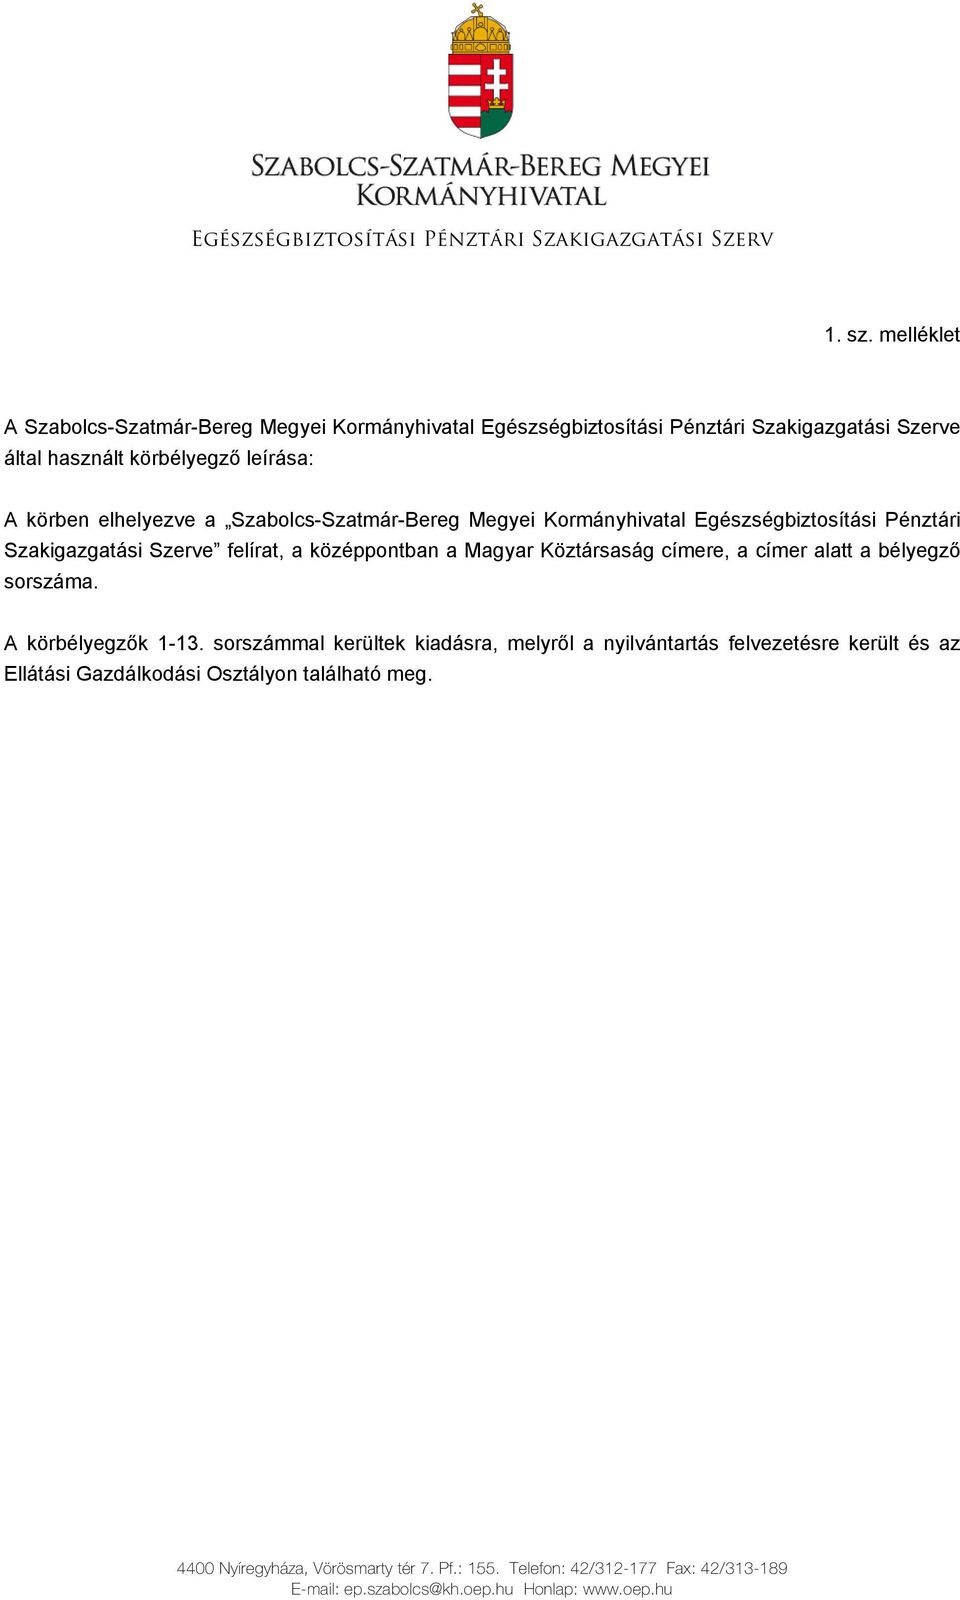 Szabolcs-Szatmár-Bereg Megyei Kormányhivatal Egészségbiztosítási Pénztári Szakigazgatási Szerve felírat, a középpontban a Magyar Köztársaság címere, a címer alatt a